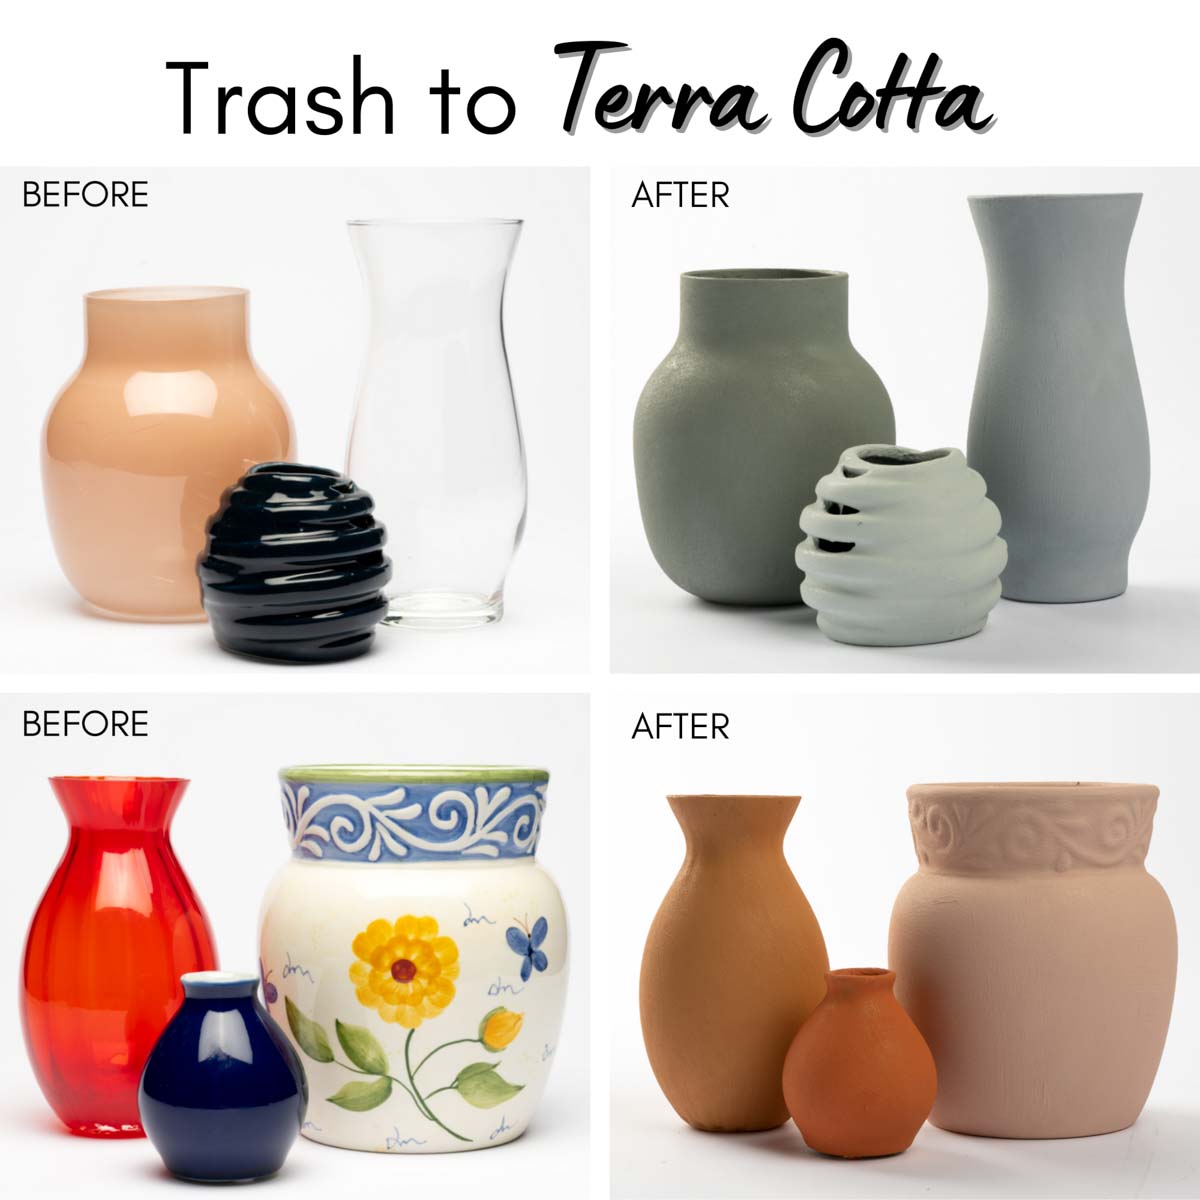 FolkArt ® Terra Cotta™ Acrylic Paint - Clay Pot, 2 oz. - 7019